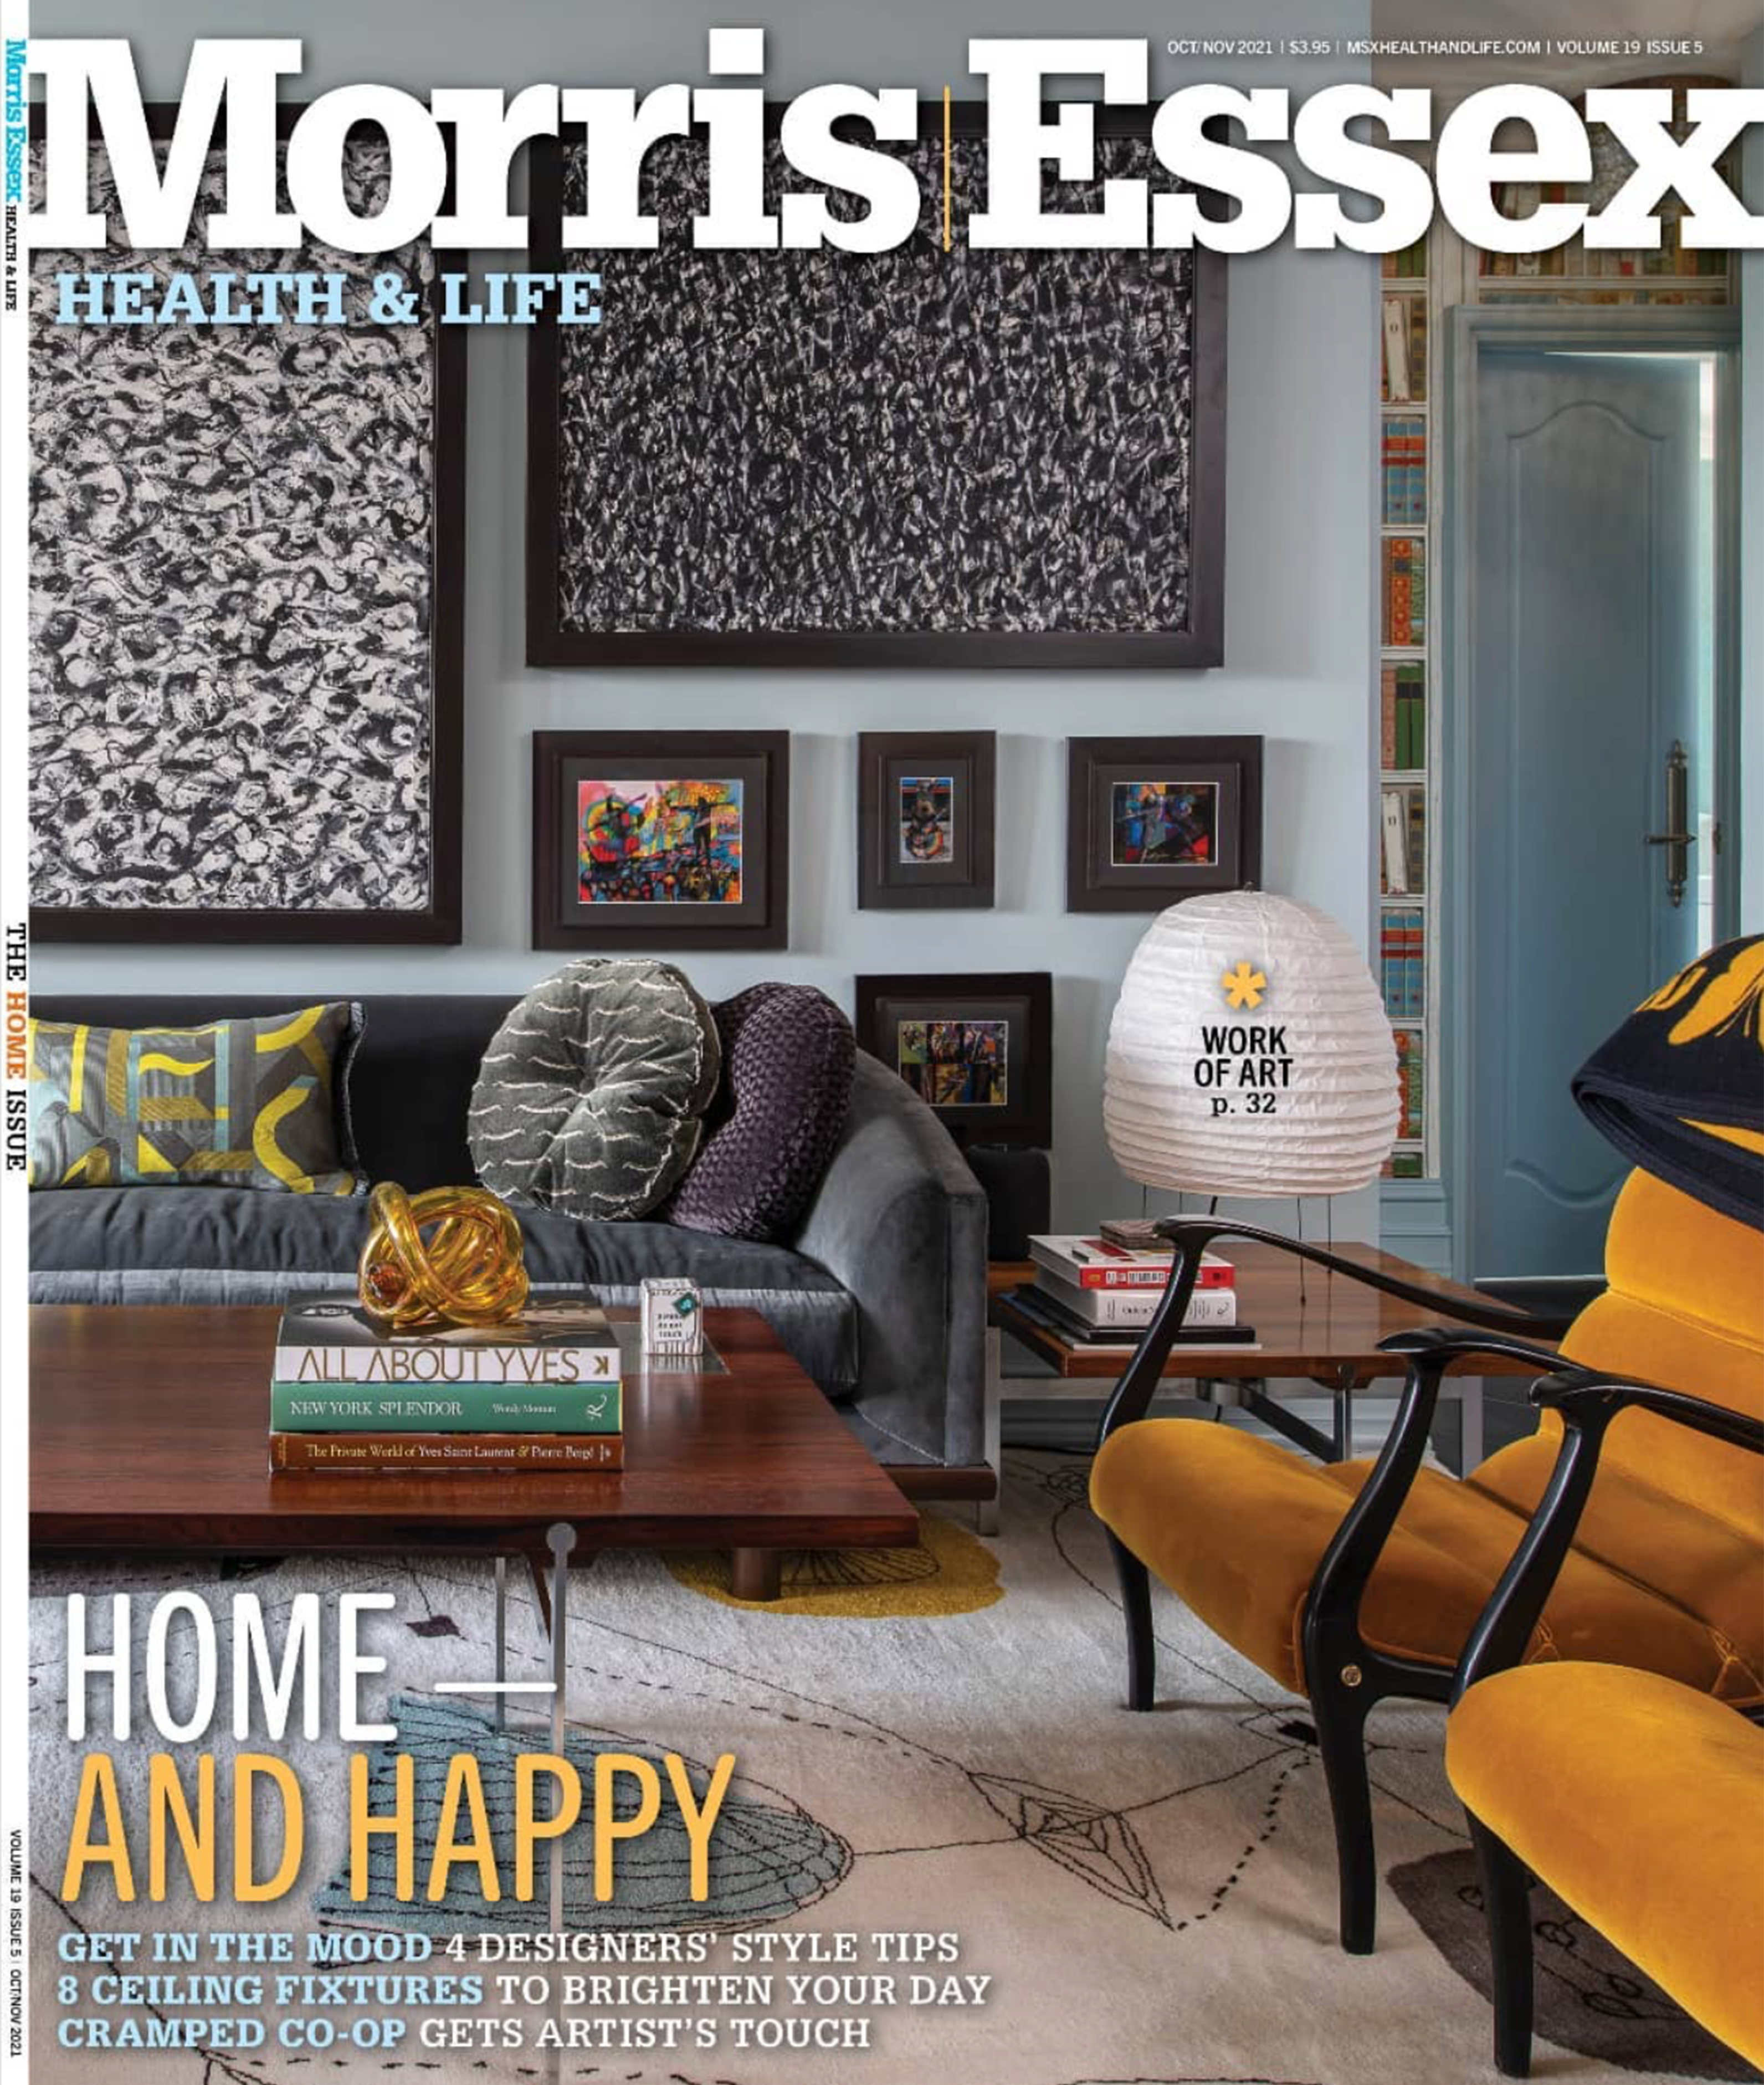 Essex magazine cover story